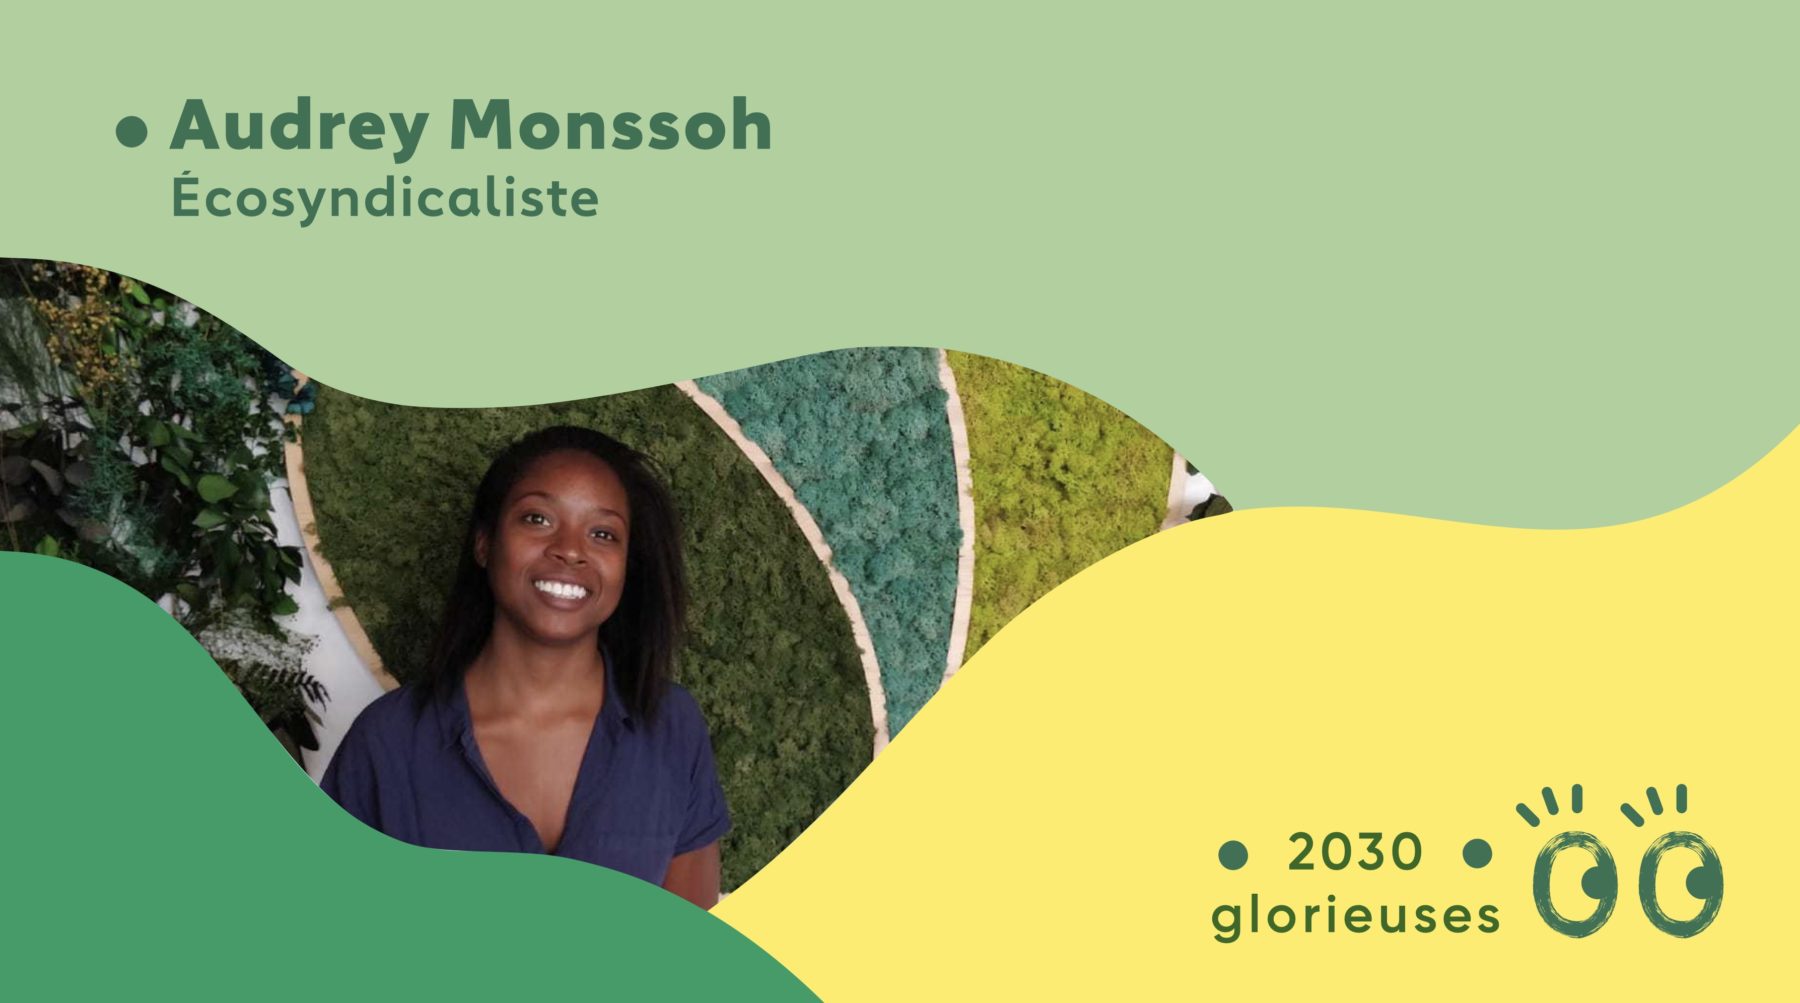 2030 Glorieuses #87 : Audrey Monssoh : “Les syndicats ont un rôle majeur dans la transformation écologique et sociale de notre société."